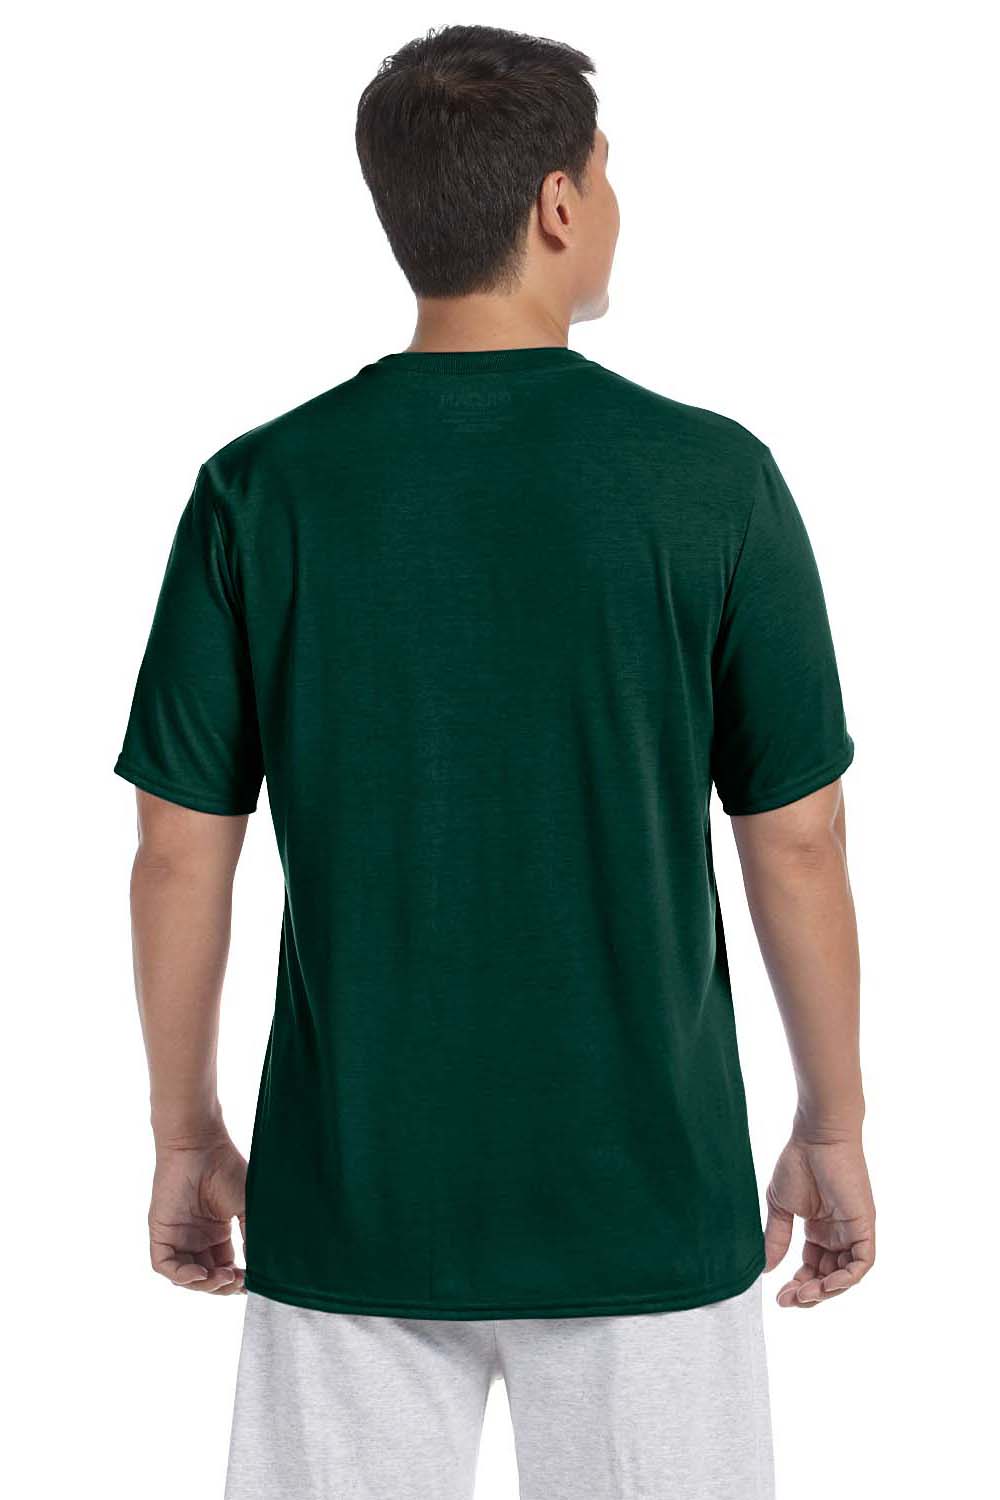 Gildan G420 Mens Performance Jersey Moisture Wicking Short Sleeve Crewneck T-Shirt Forest Green Back